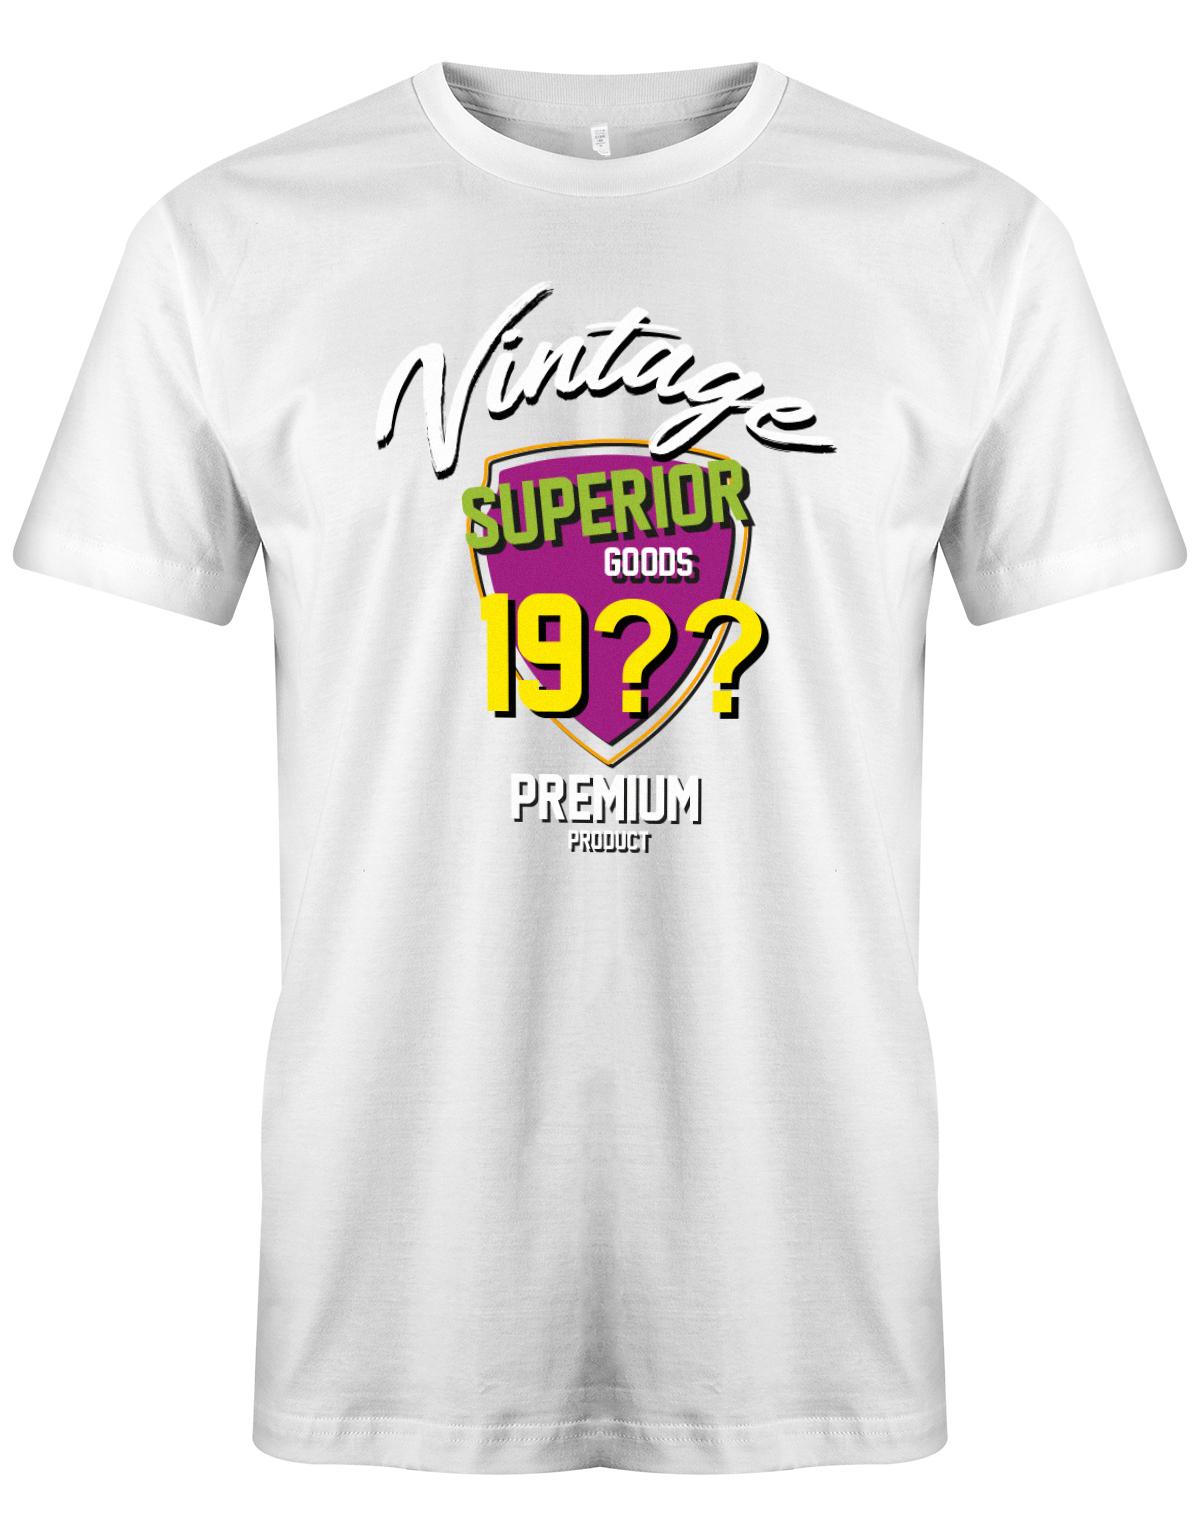 Geburtstag Tshirt für Männer Vintage Superior goods Personalisiert mit Geburtsjahr Premium Product Weiss